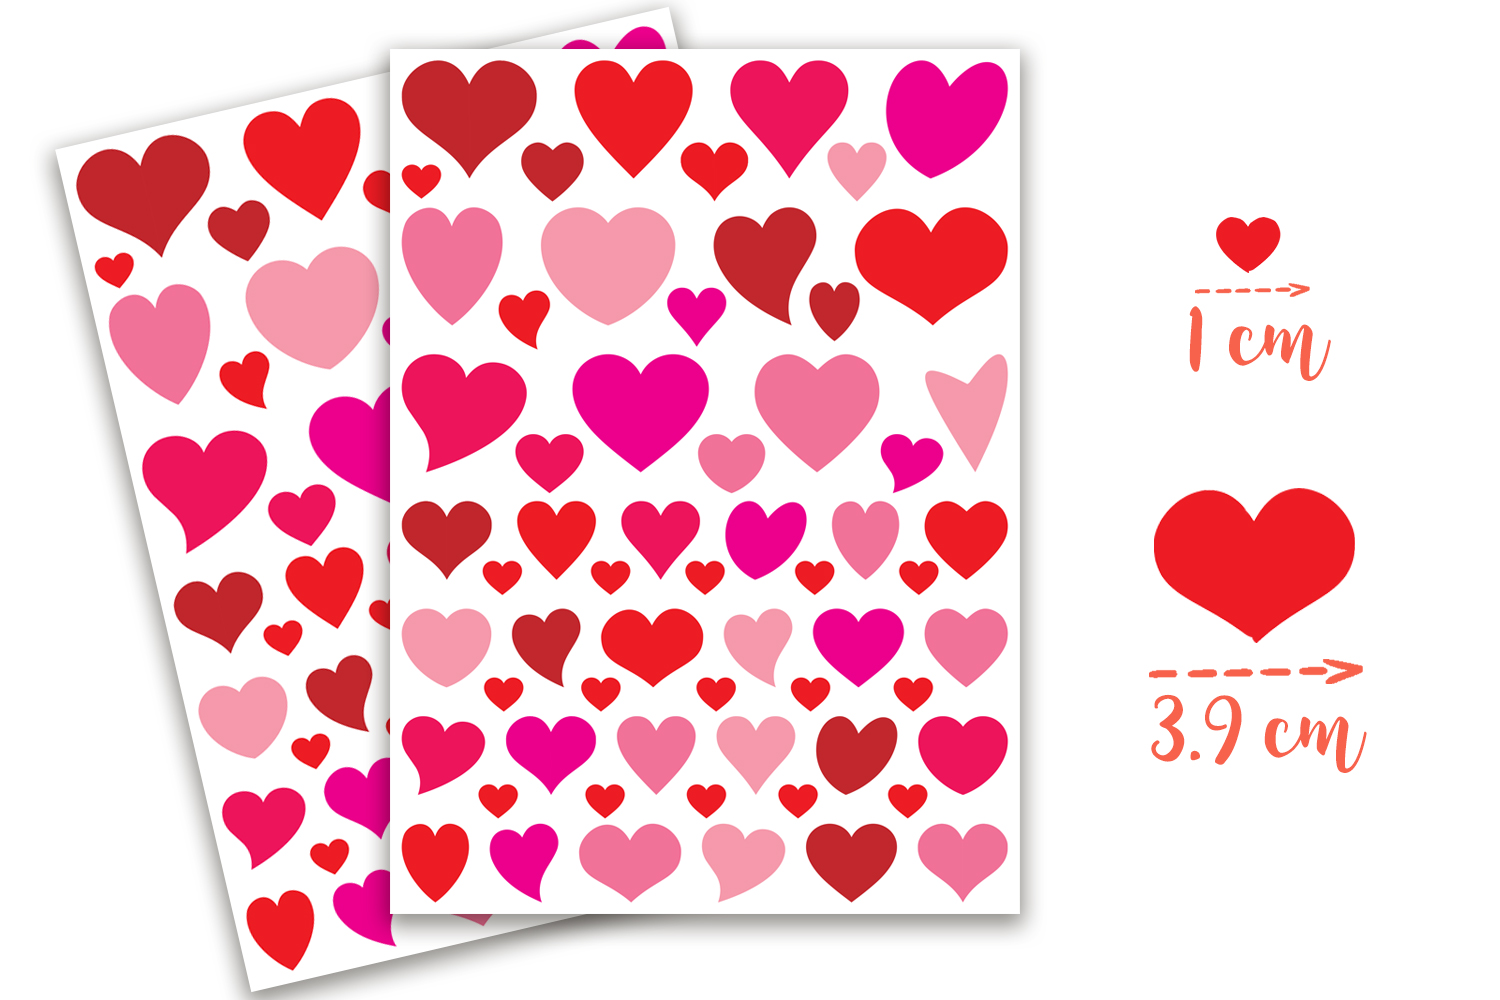 Carnet de 20 bons d'Amour: v1-9  20 coupons en couleur à remplir